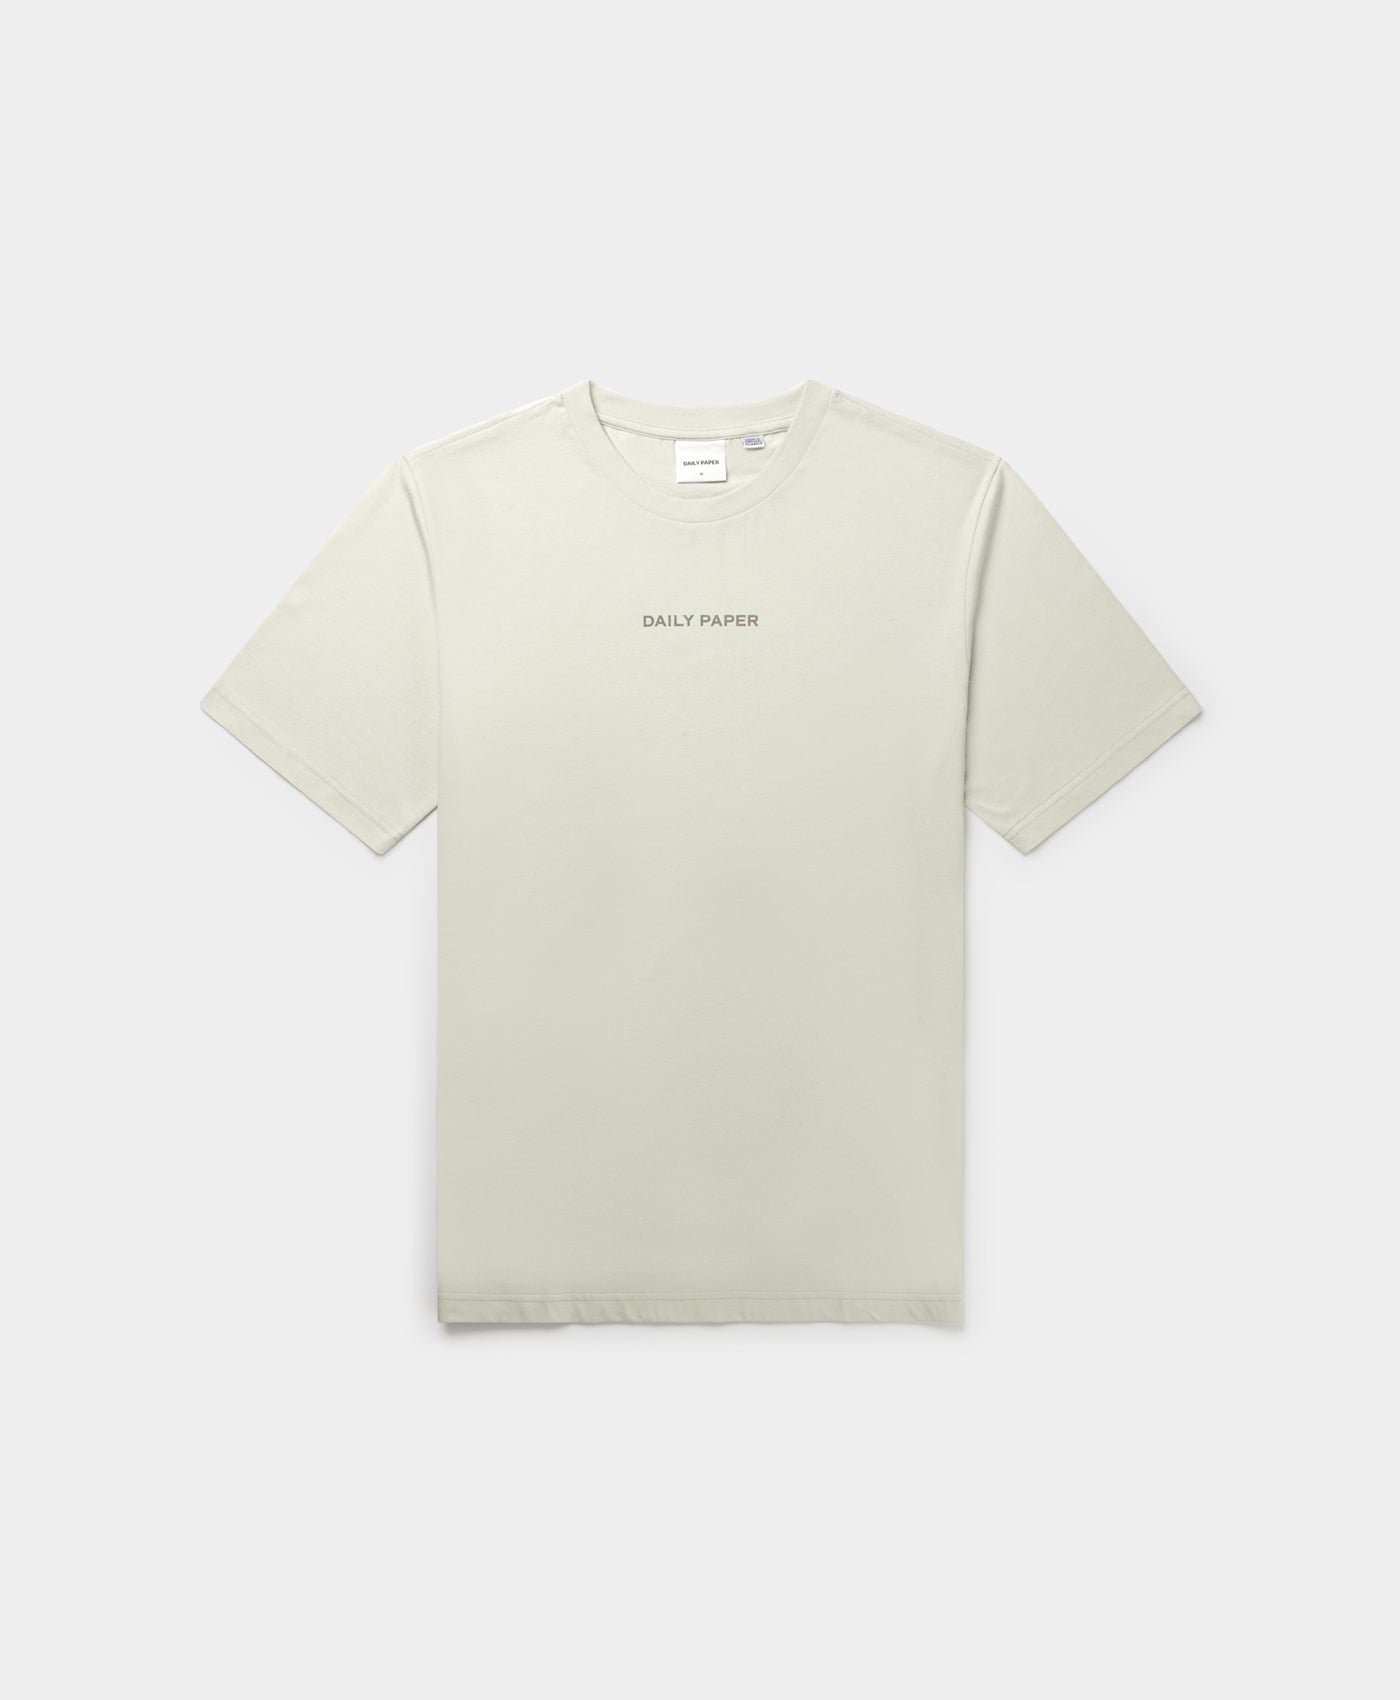 DP - Metal Grey Etype T-Shirt - Packshot - Front